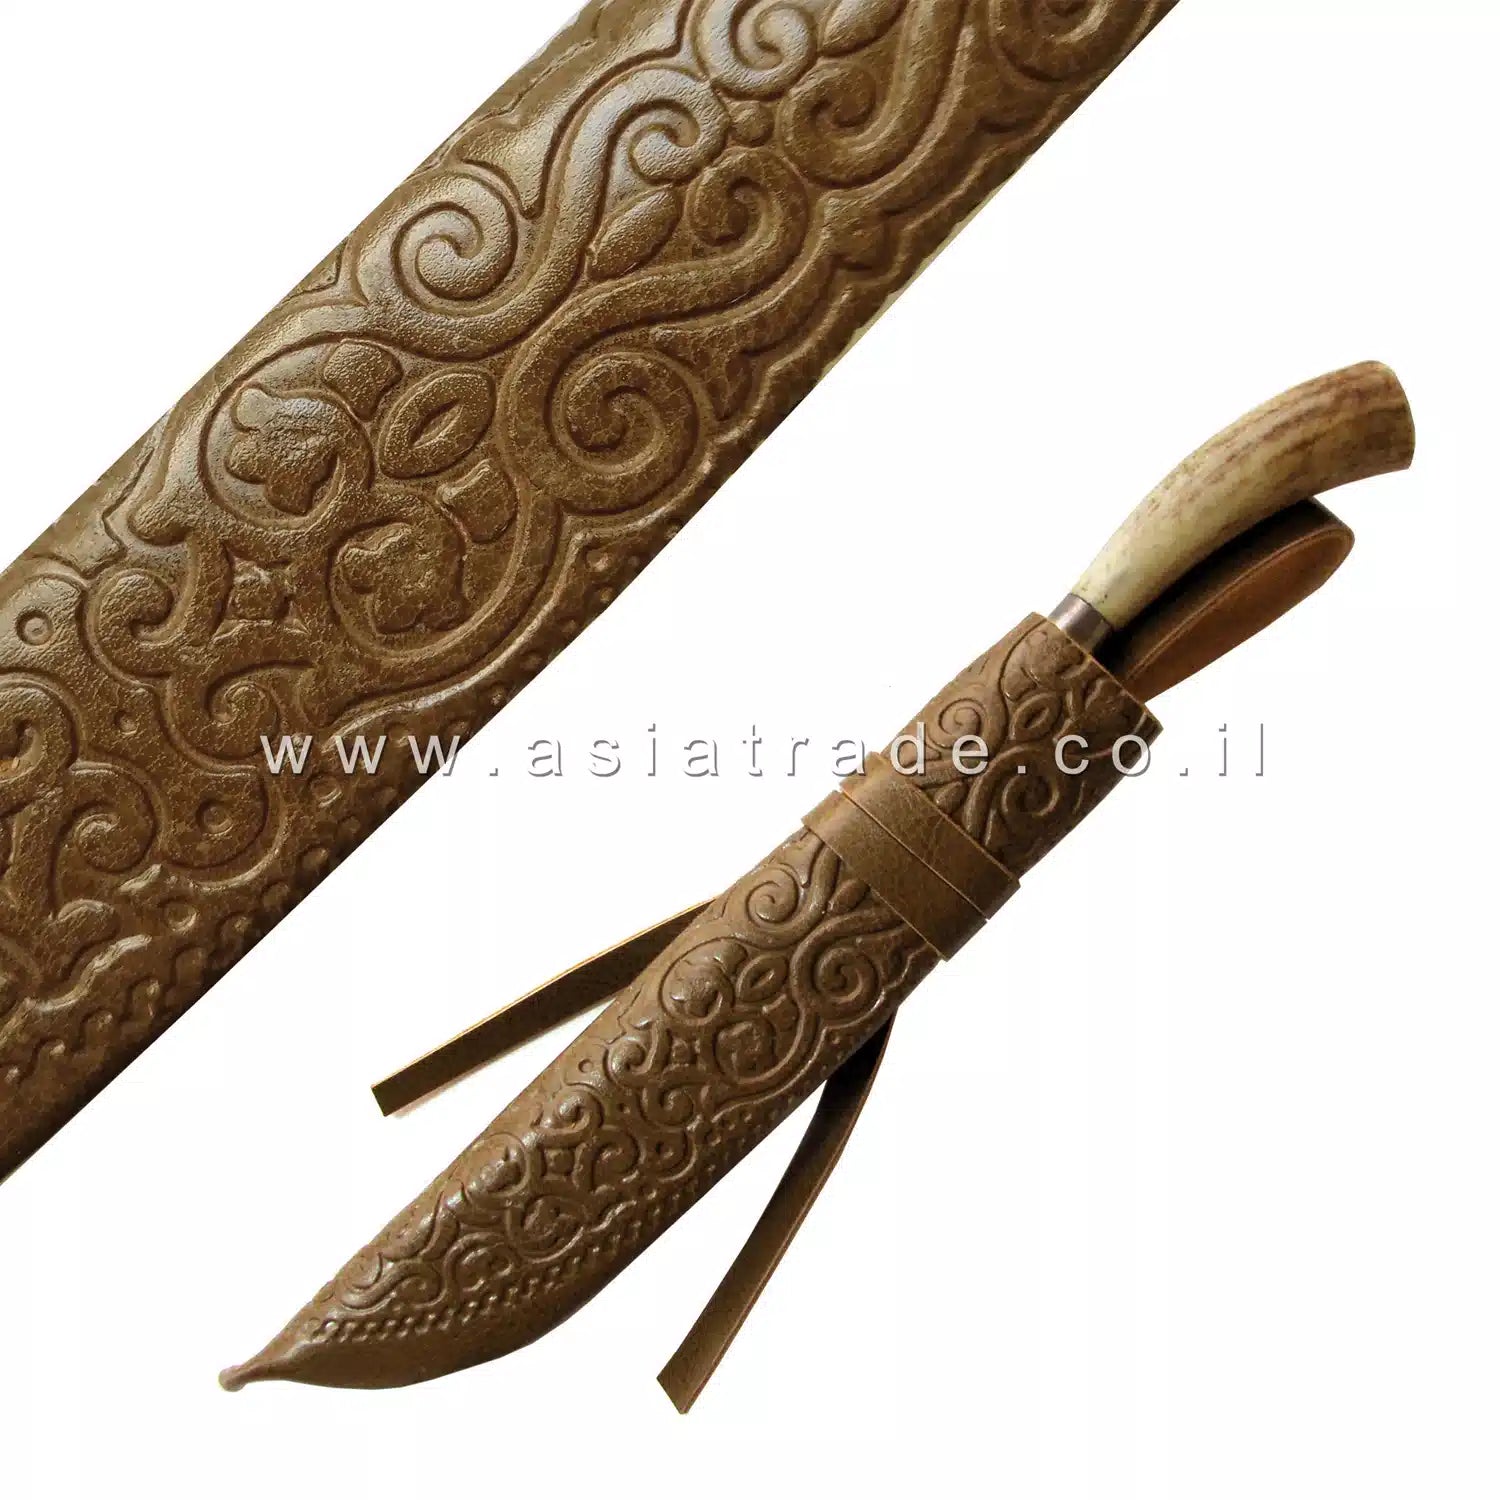 Узбекский нож ручной работы, Пчак - CHUST 1112 